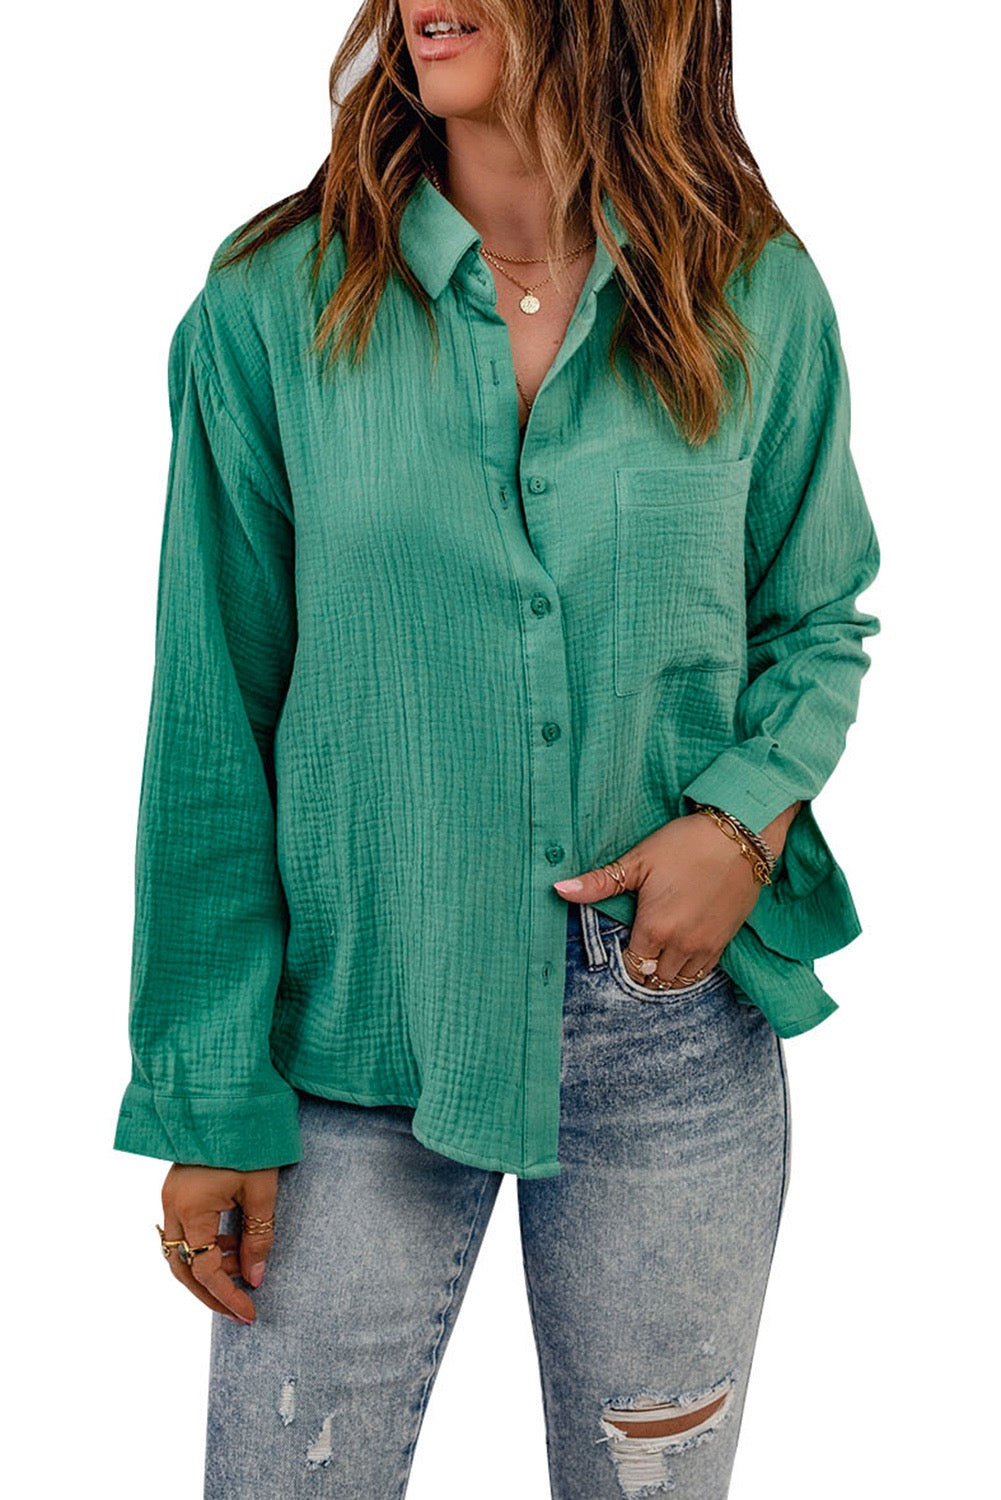 Green long Sleeve Shirt